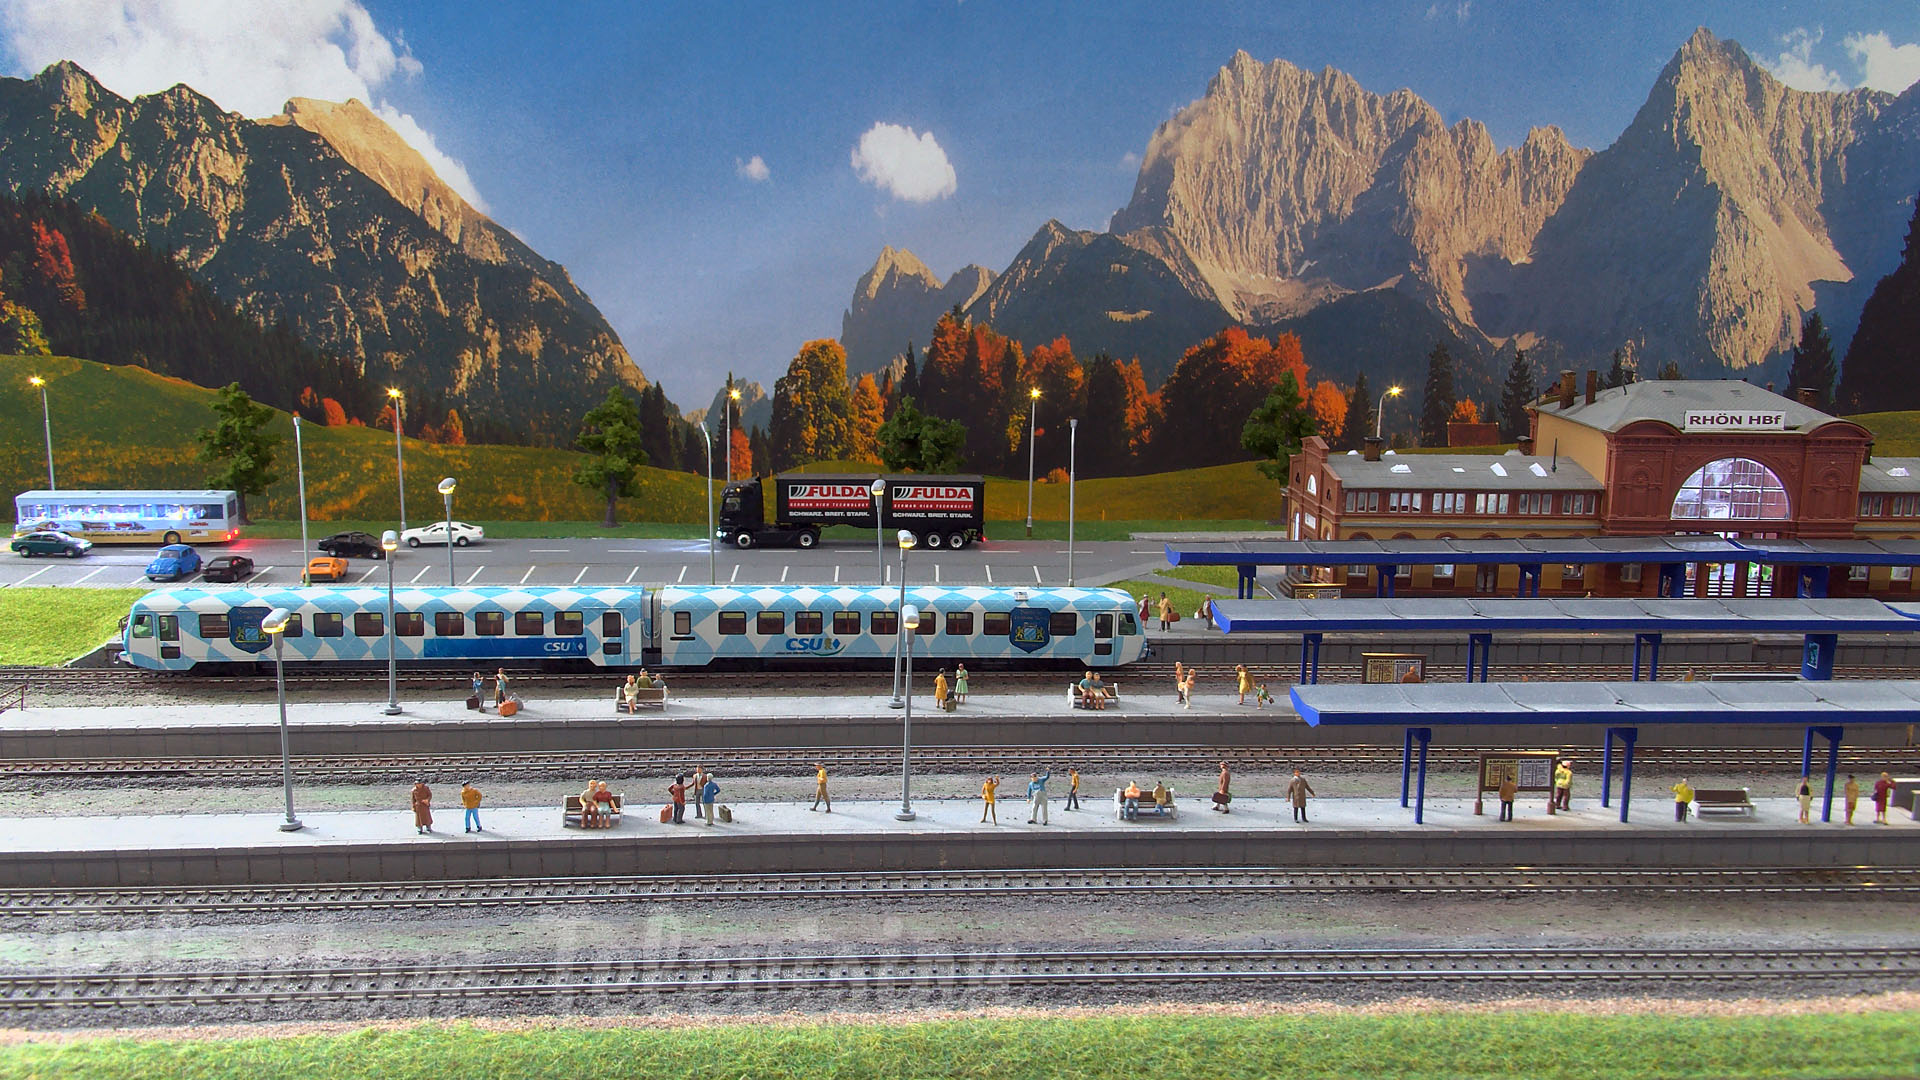 Modélisme ferroviaire allemand - Réseau modulaire de trains miniatures à l’échelle HO